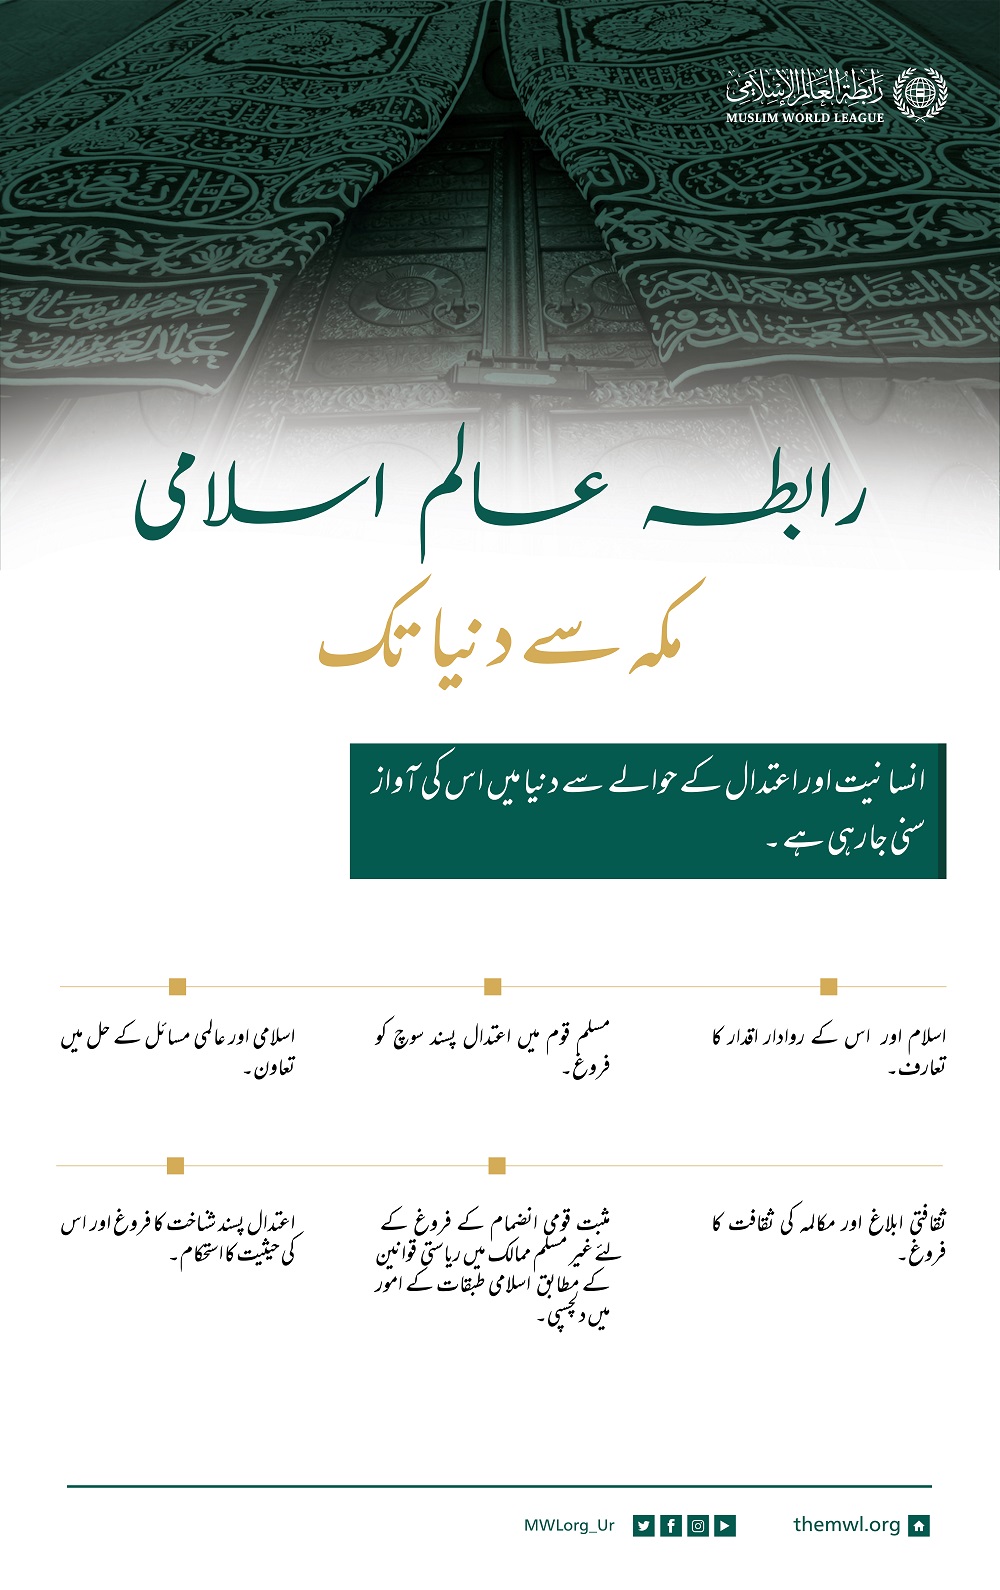 رابطہ عالم اسلامی، ایک اسلامی انسانی وژن،  مکہ سے عالم تک، تمام جہان کے لئے بھلائی اور امن کا پیغام